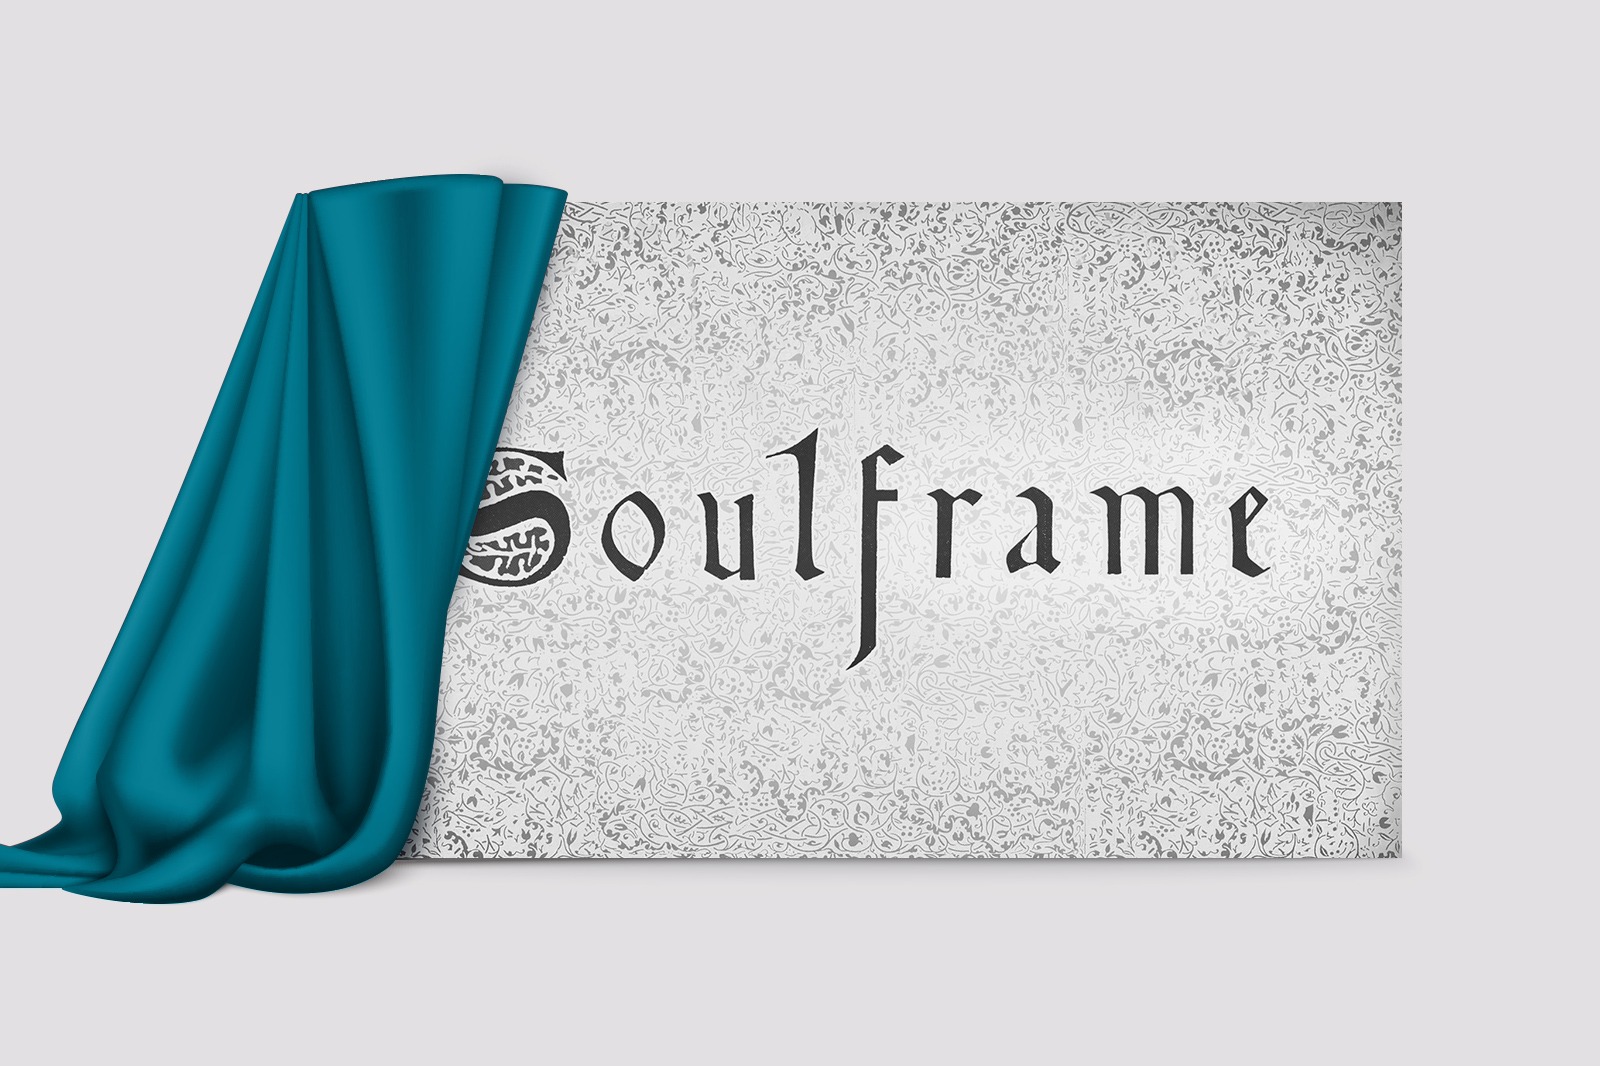 Soulframe - Tựa game bom tấn về thế giới mở cuối cùng cũng "thành hình", vừa được nhà phát hành công bố